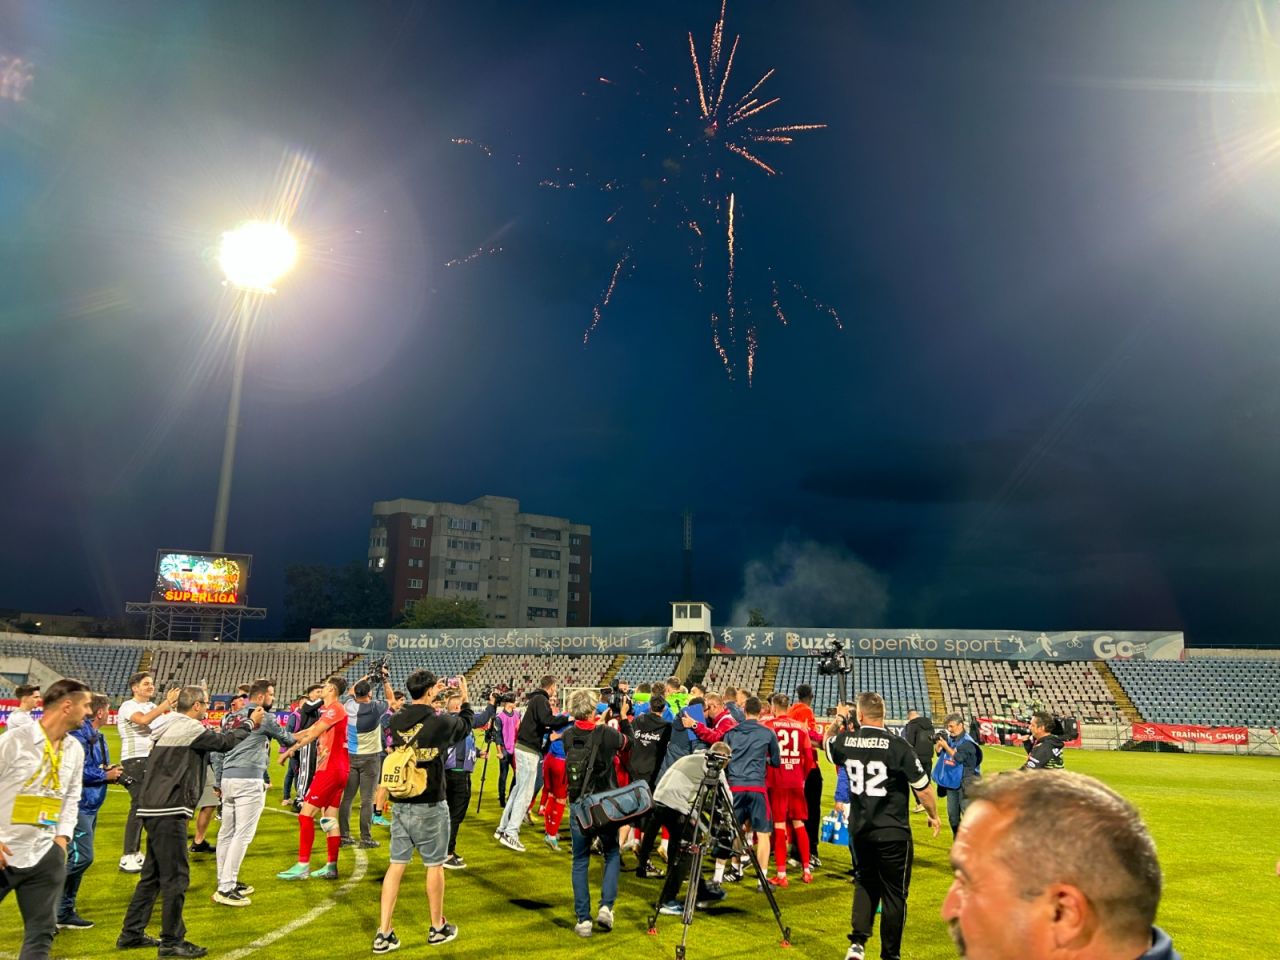 Sărbătoare la Buzău! Fotbaliștii s-au bucurat alături de fani în urma promovării istorice. Vali Dumitrache: ”Am muncit un an pentru asta”_33